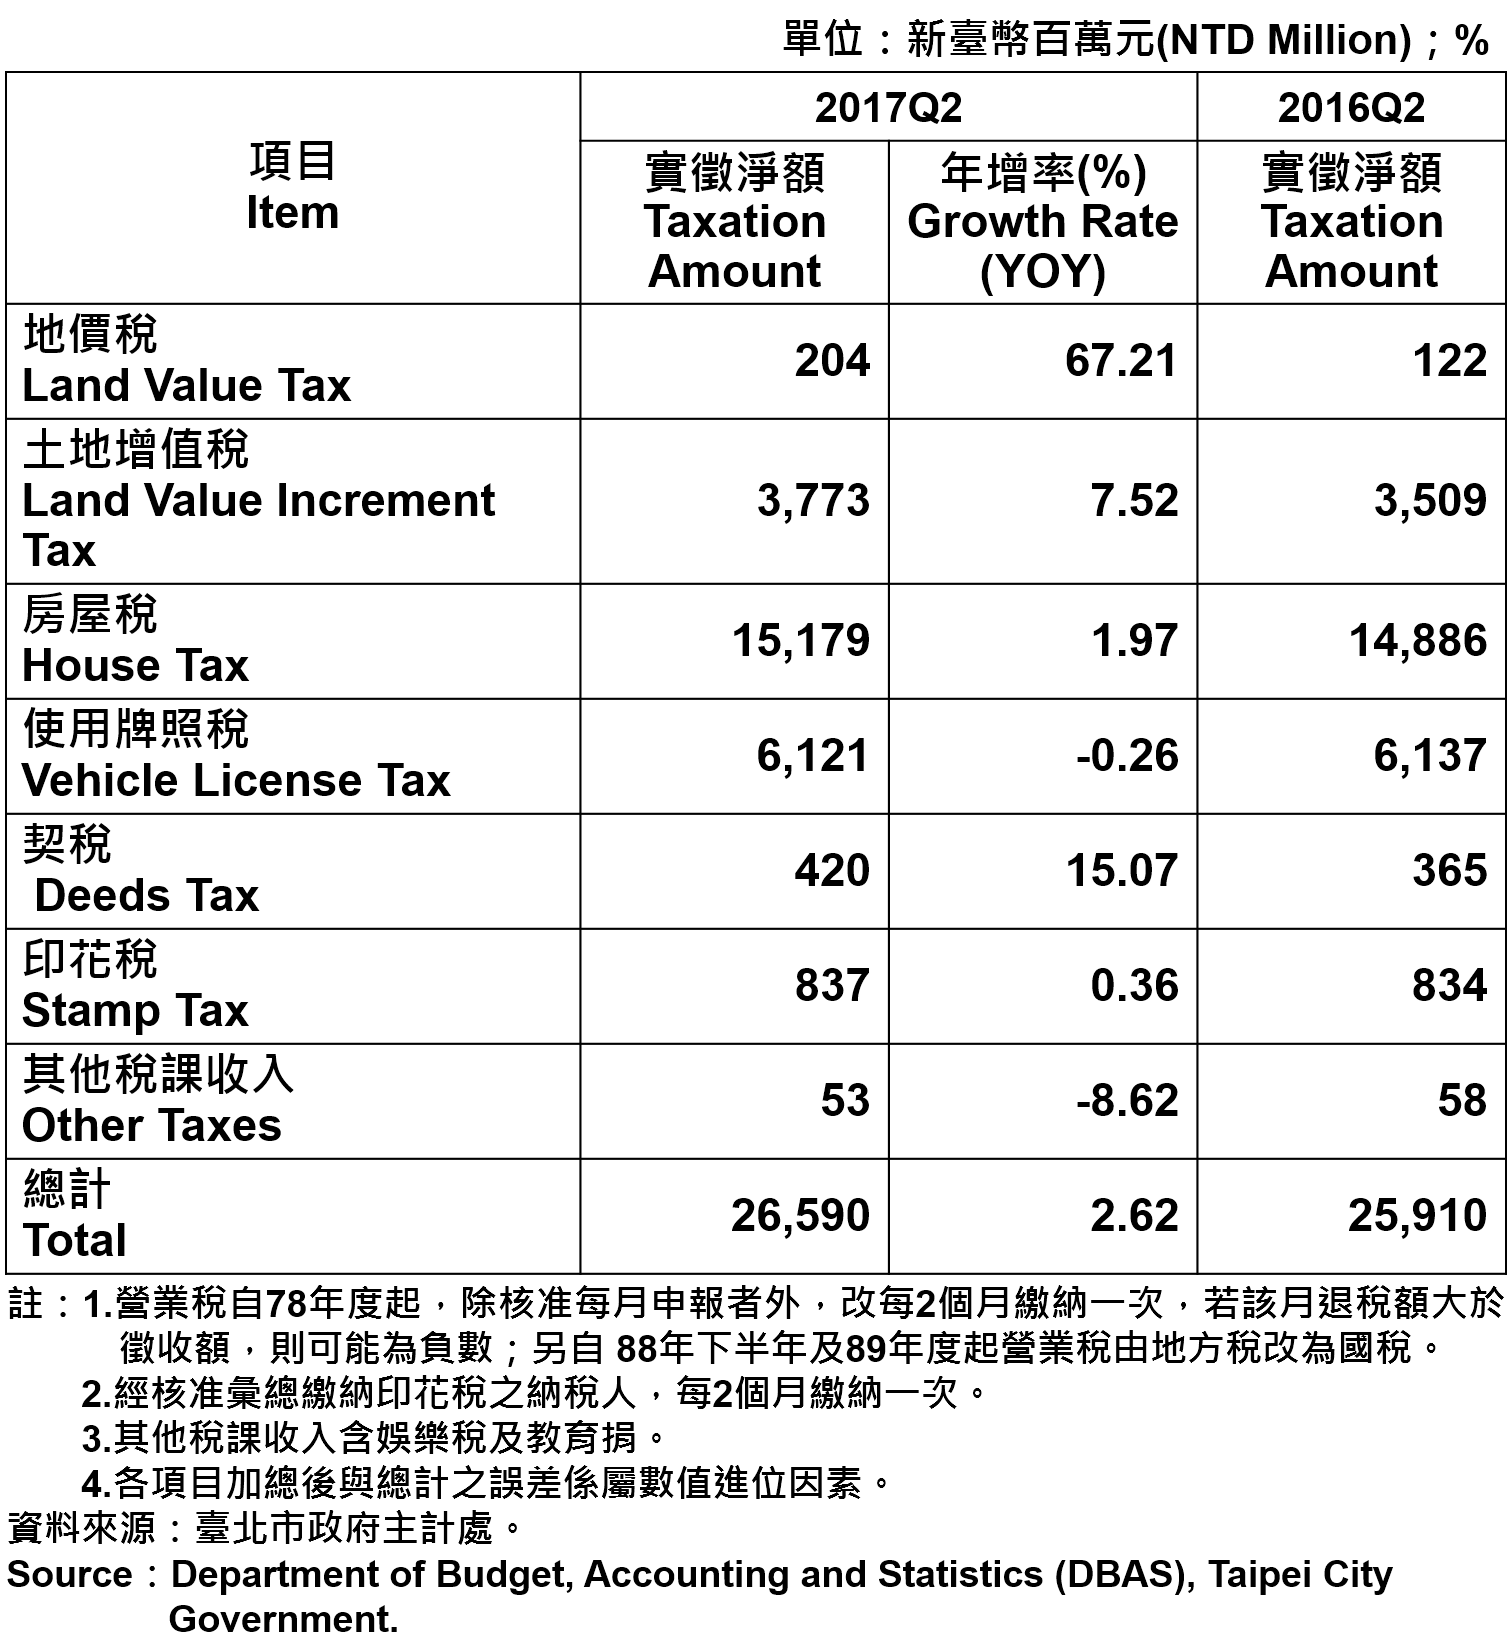 表3、臺北市地方稅收統計—2017Q2  Taxation of Taipei City—2017Q2